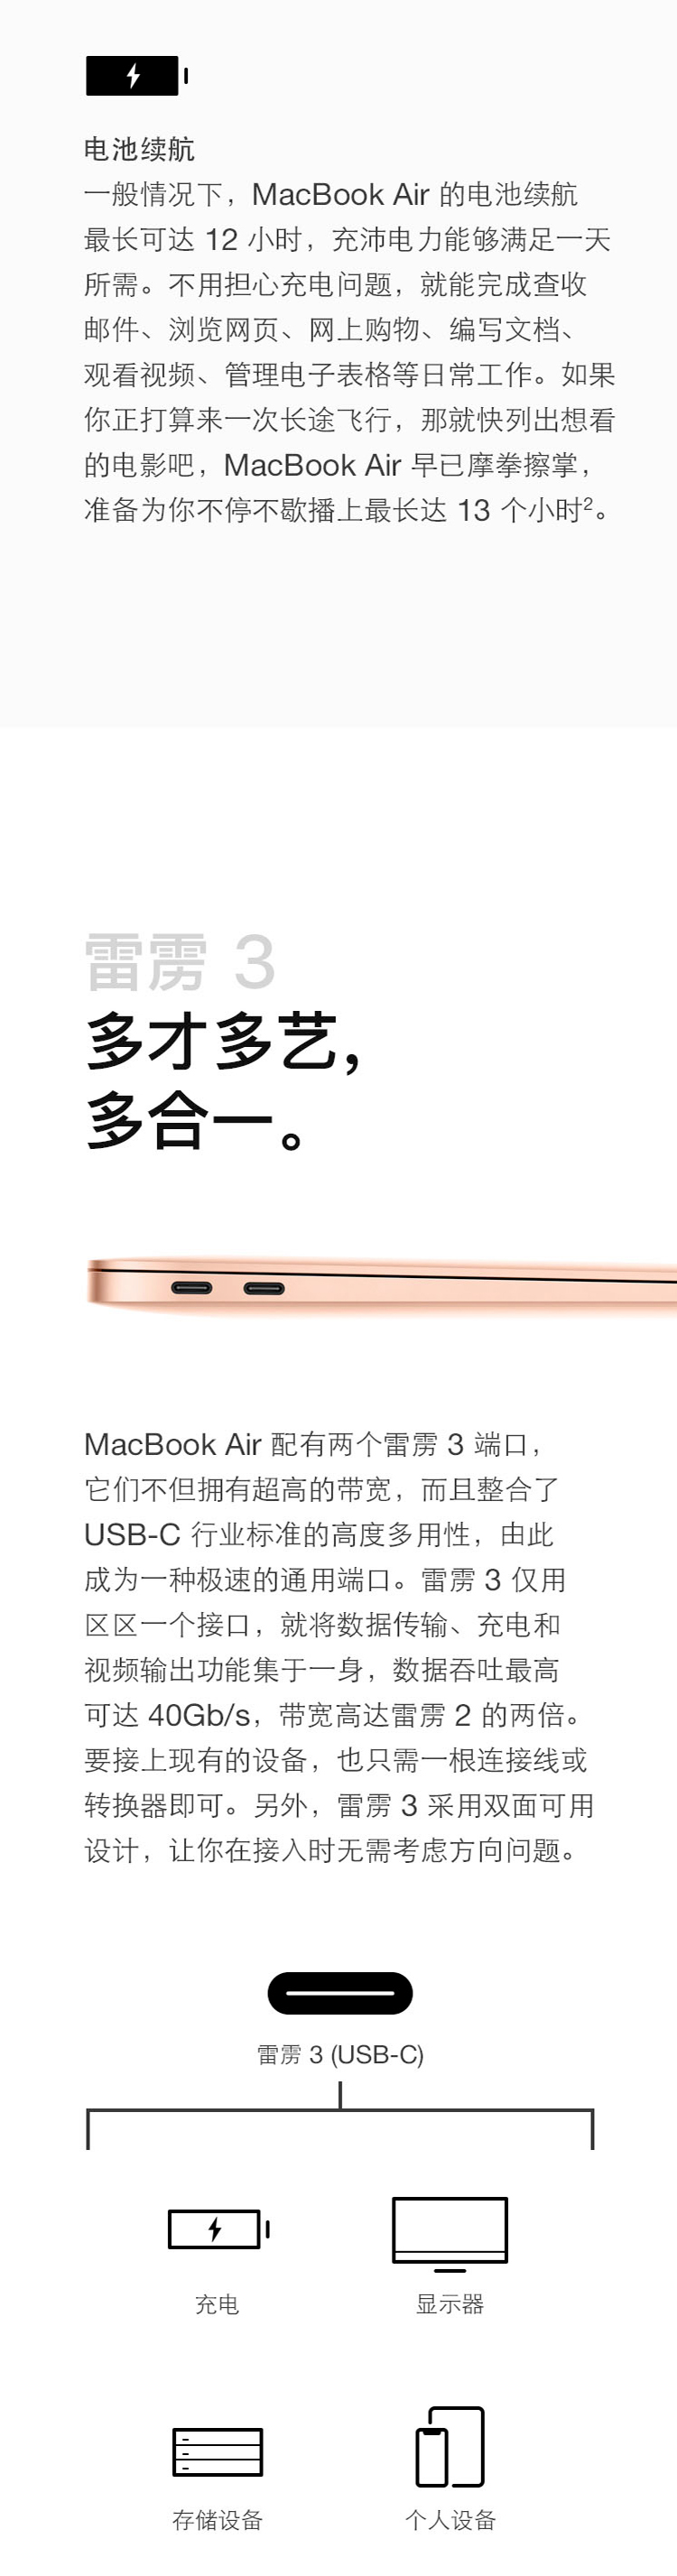 中山手机网 苹果(apple) macbook air手机专卖